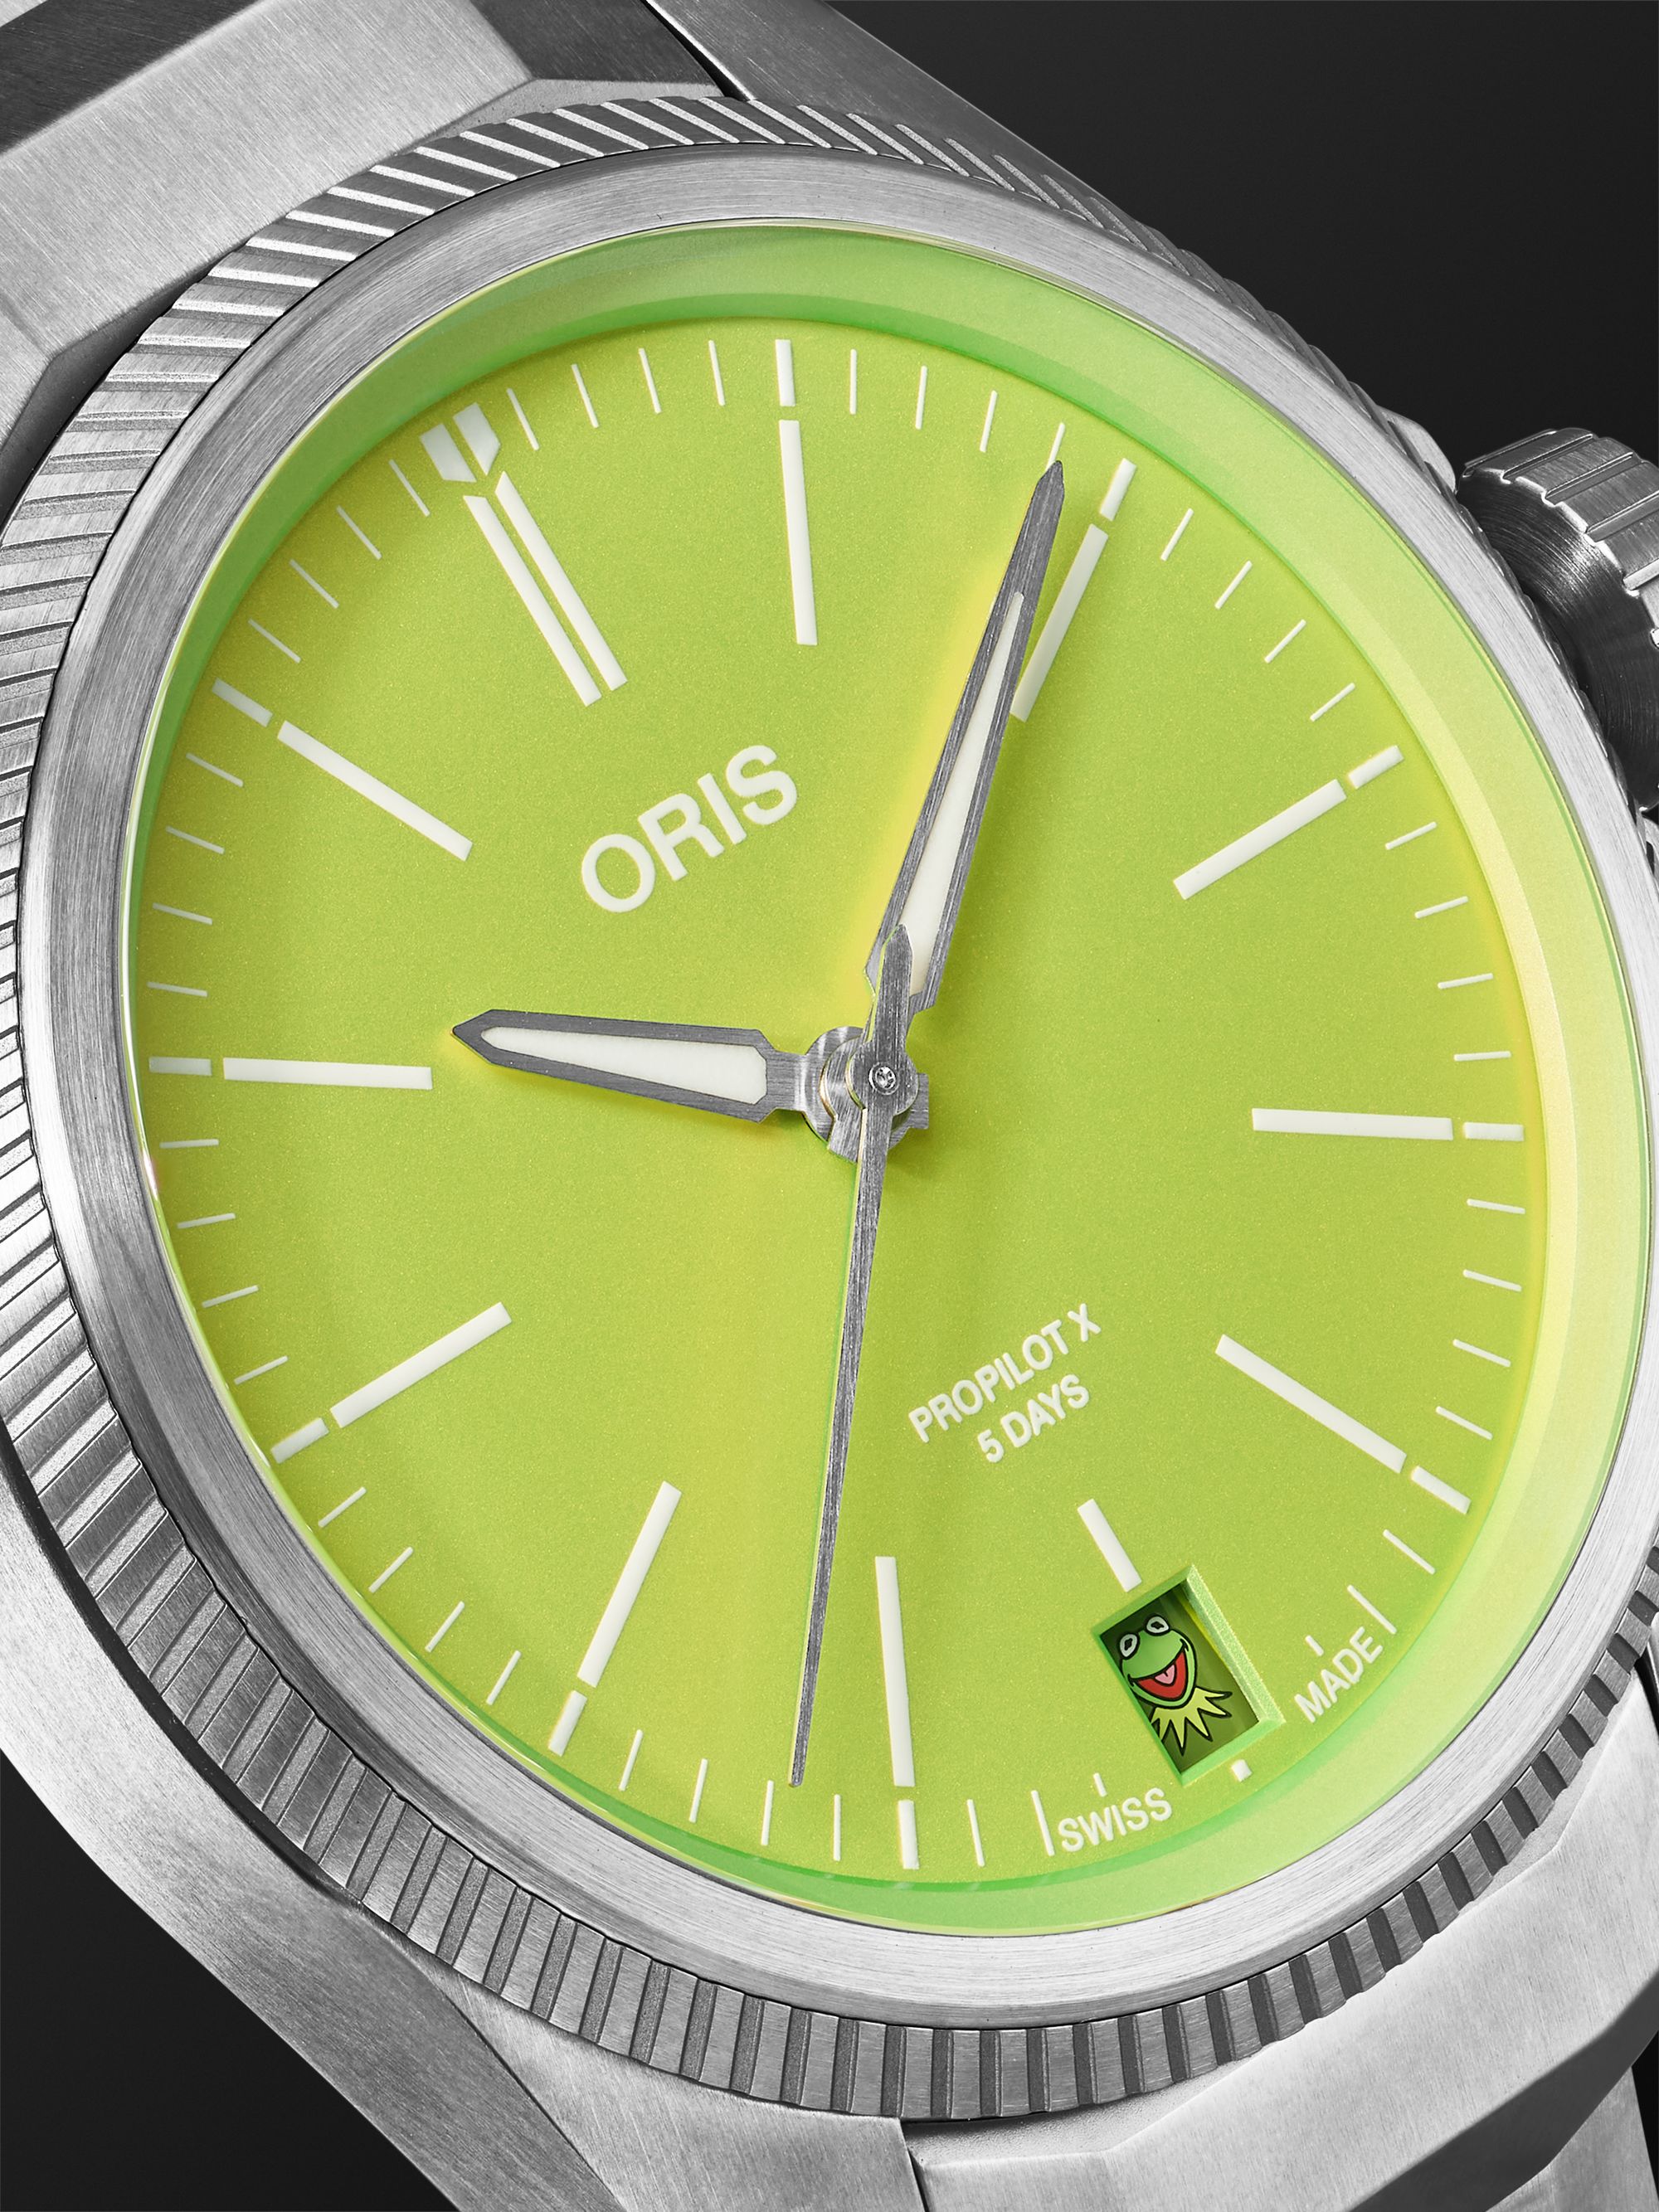 ORIS ProPilot X Kermit 39 mm Uhr aus Titan in limitierter Auflage, Ref.-Nr.: 01 400 7778 7157-07 7 20 01TLCGreen